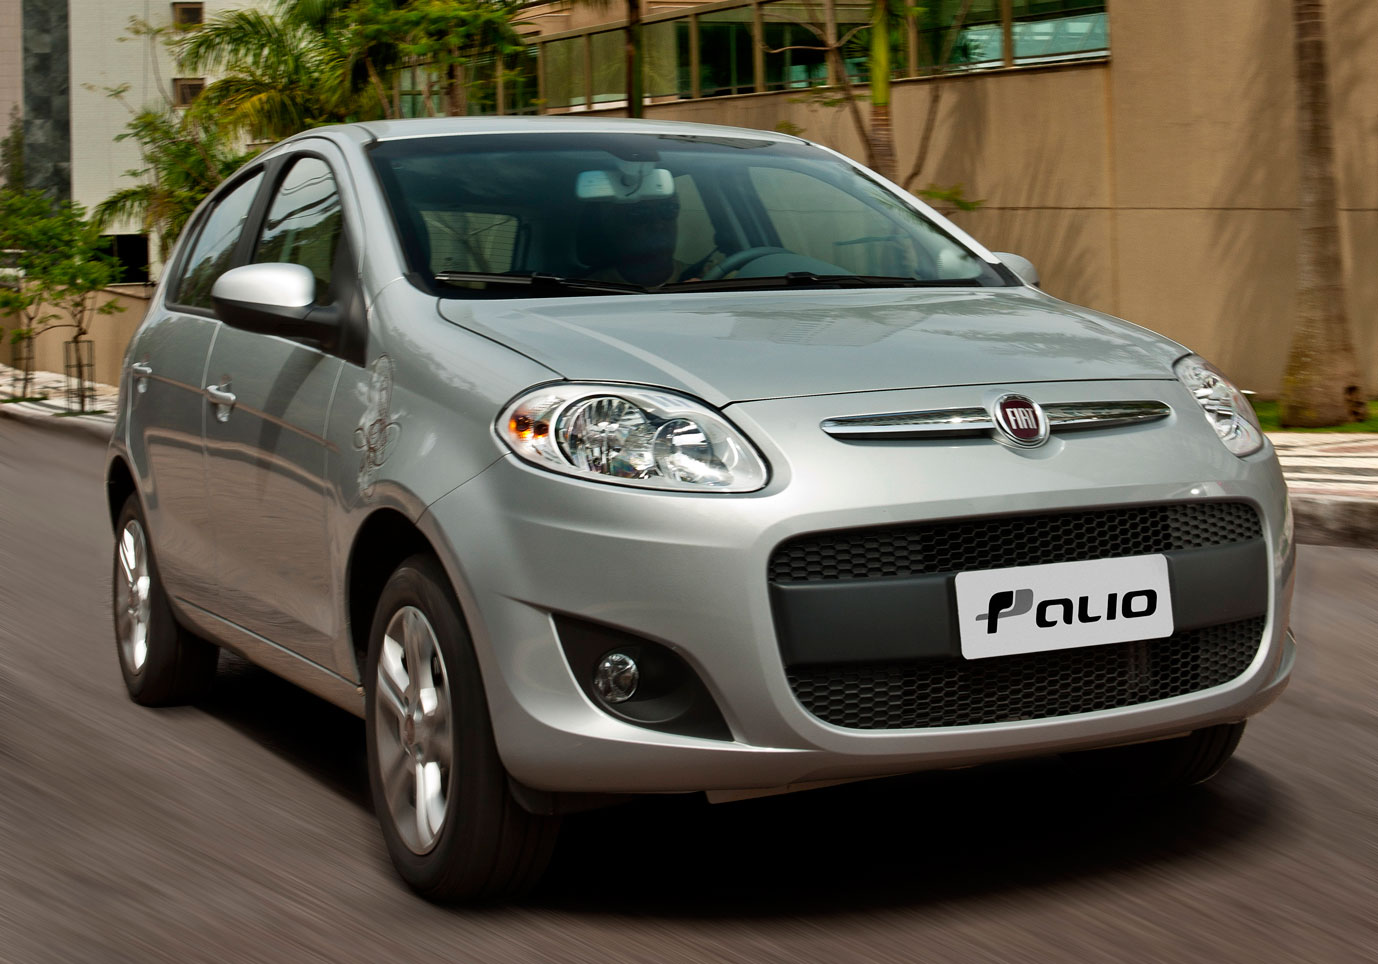 Pelo segundo mês consecutivo, o Palio é o carro mais vendido no Brasil